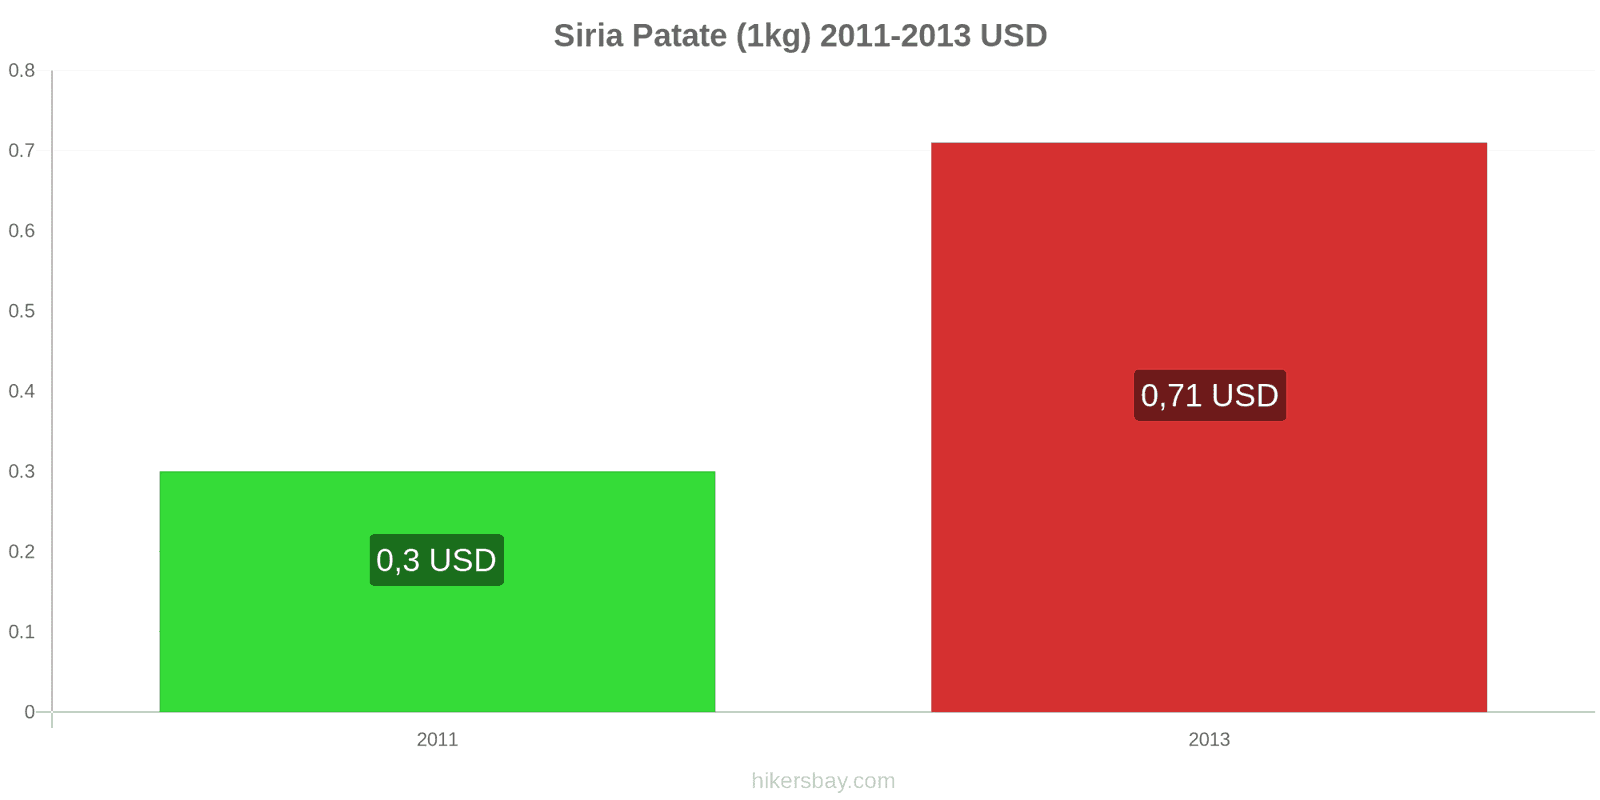 Siria cambi di prezzo Patate (1kg) hikersbay.com